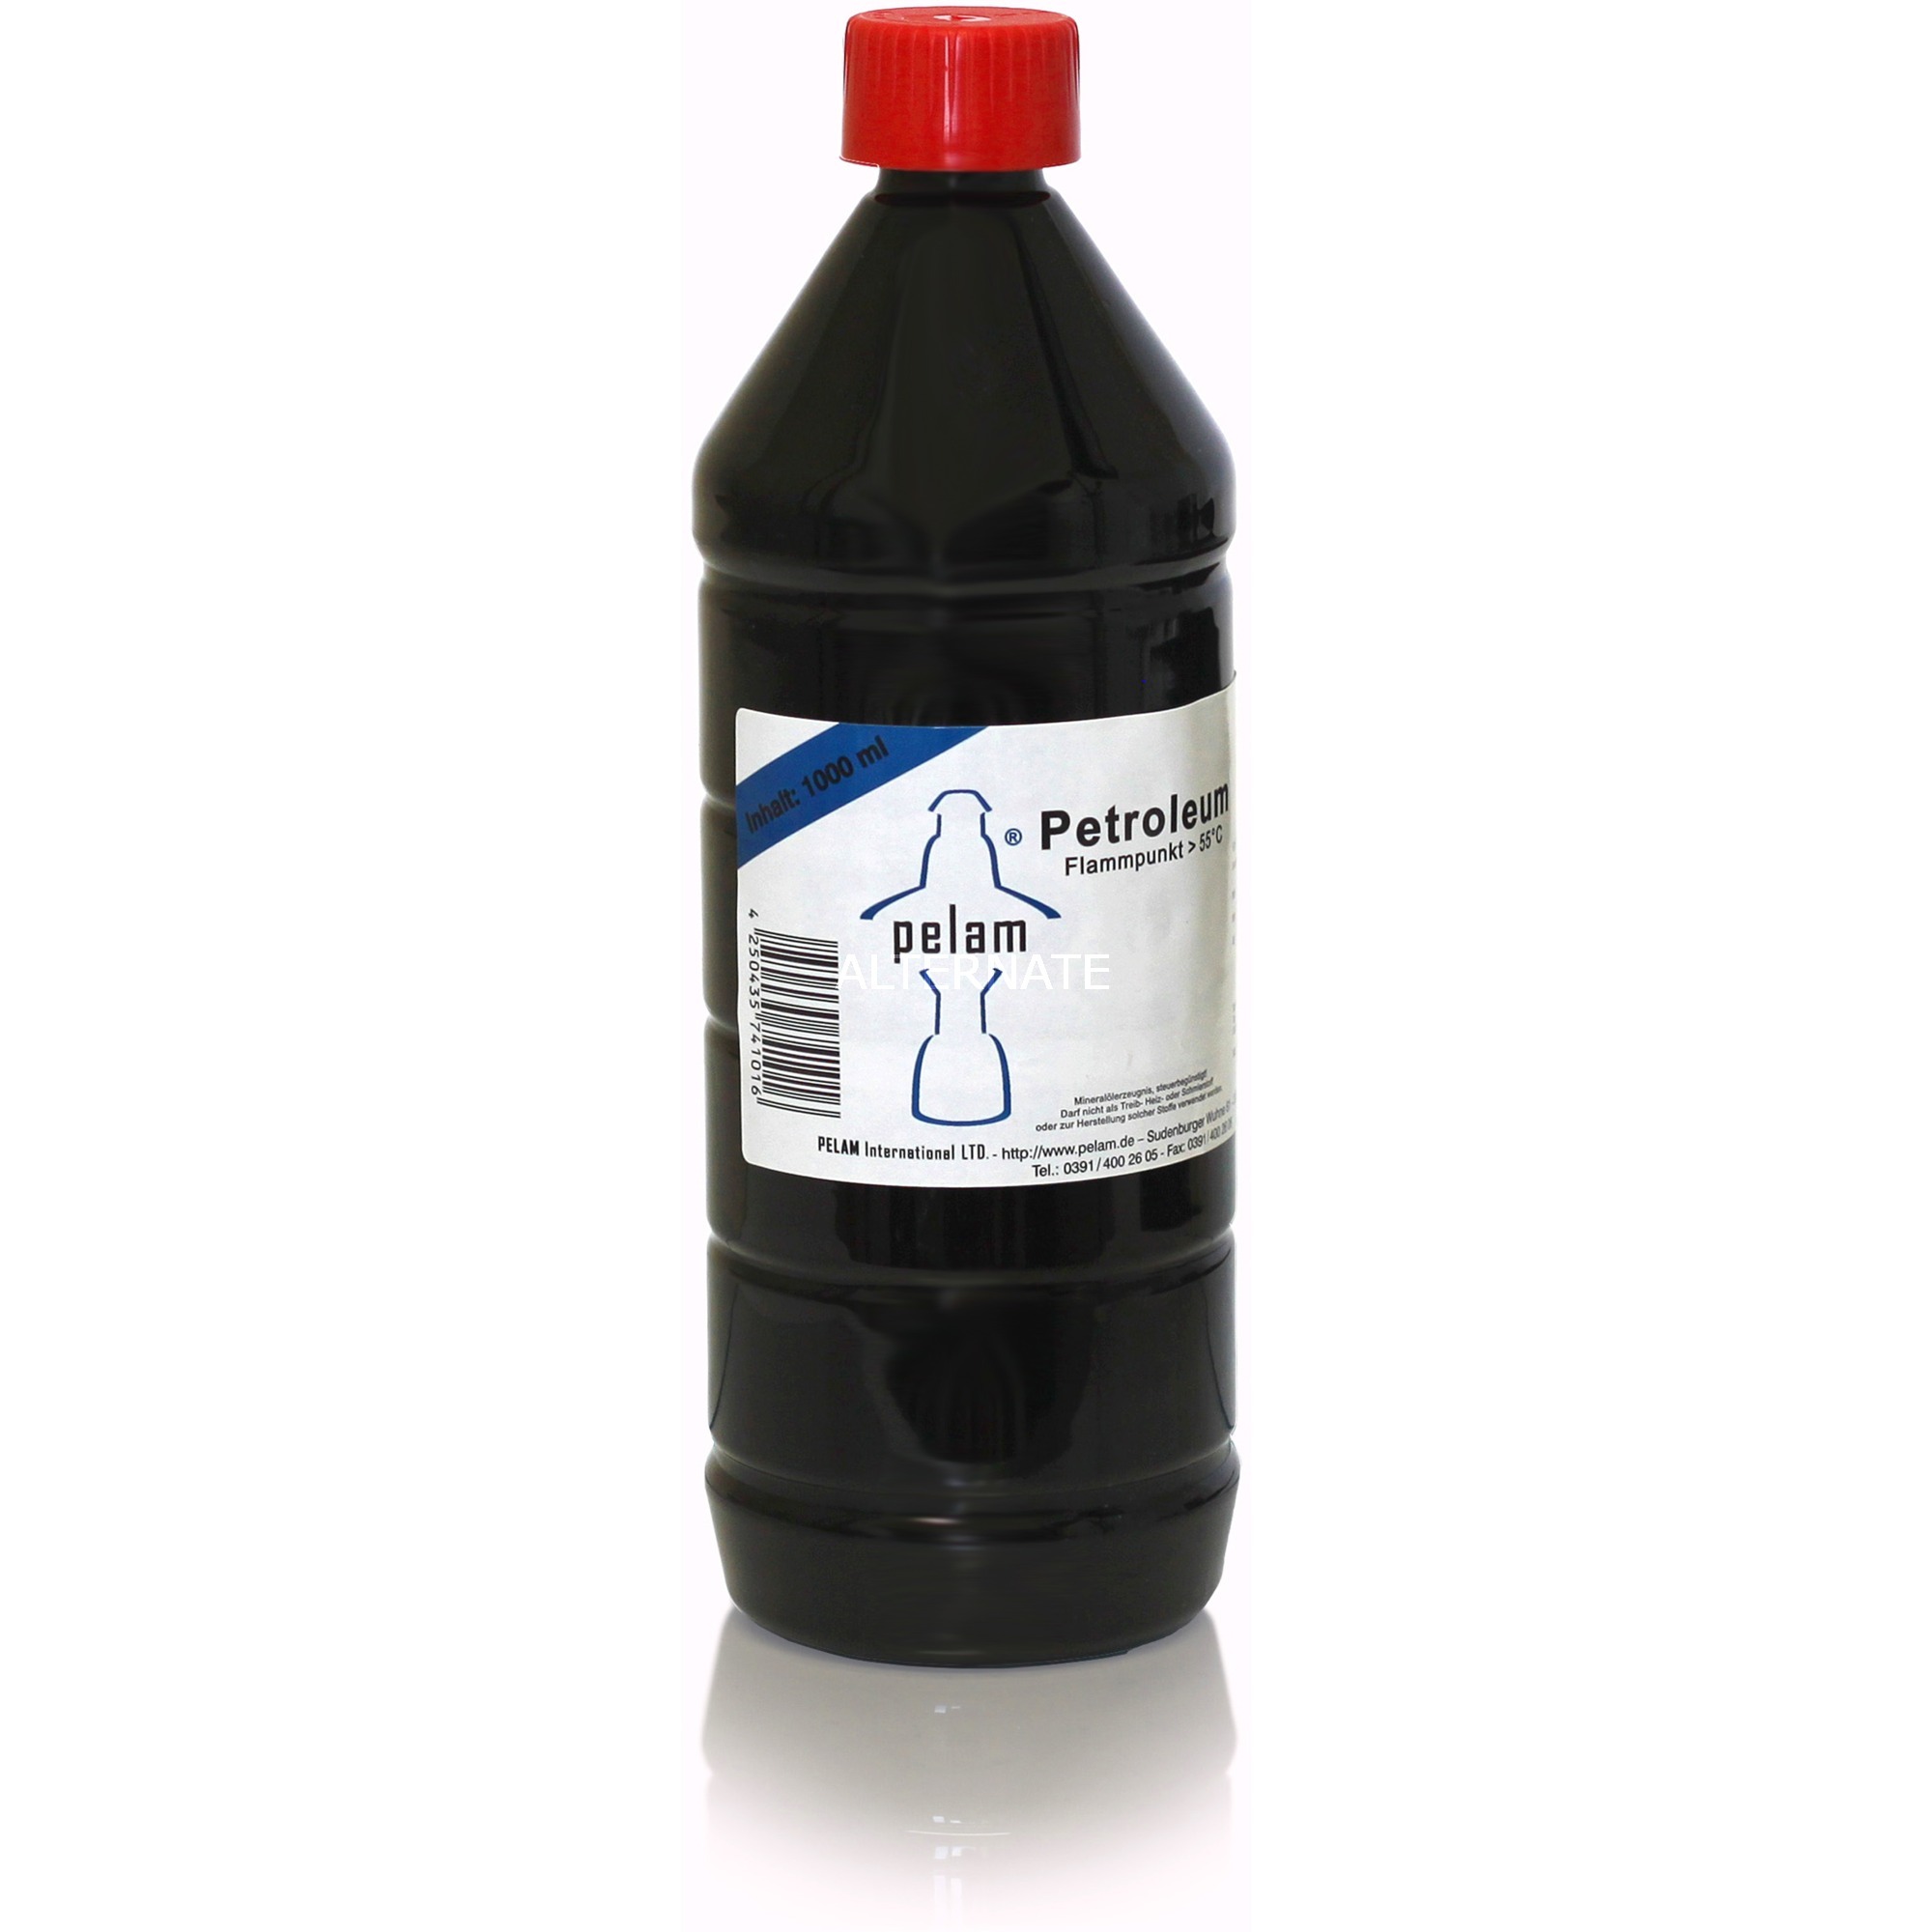 Image of Alternate - Petroleum 1 Liter , Brennstoff online einkaufen bei Alternate